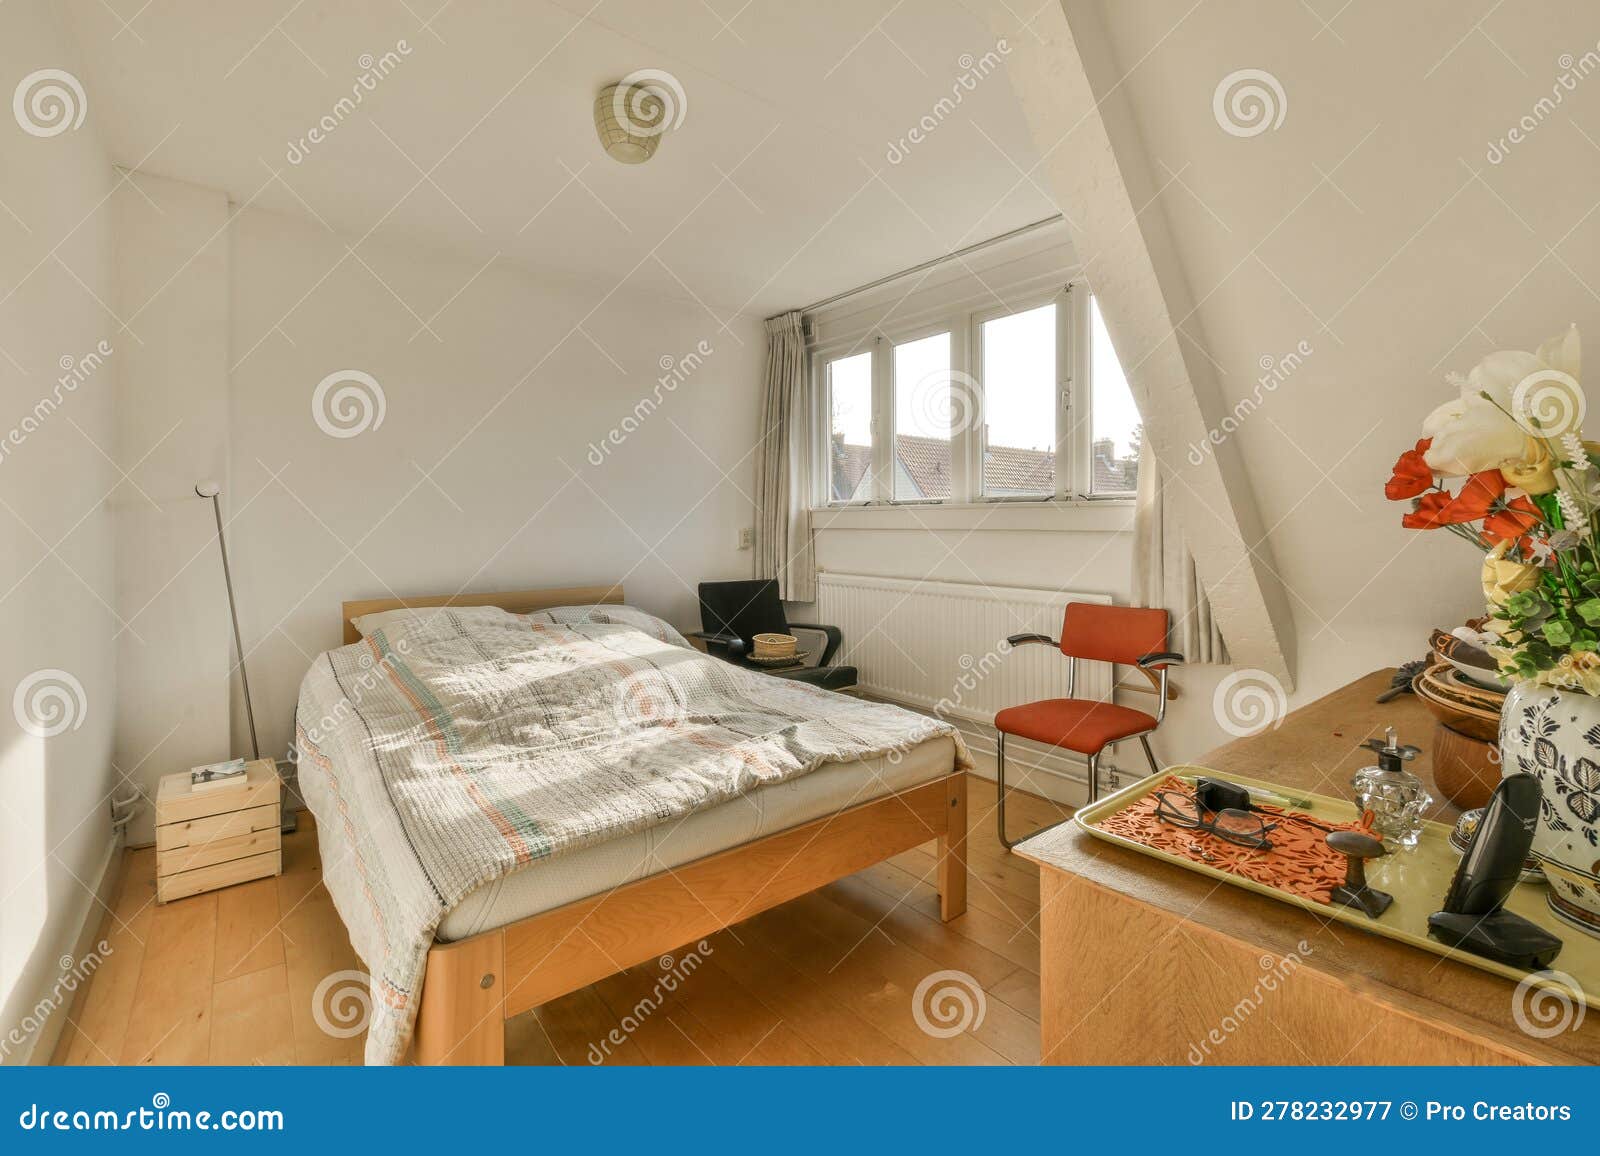 Un dormitorio con una cama y una silla en la esquina.